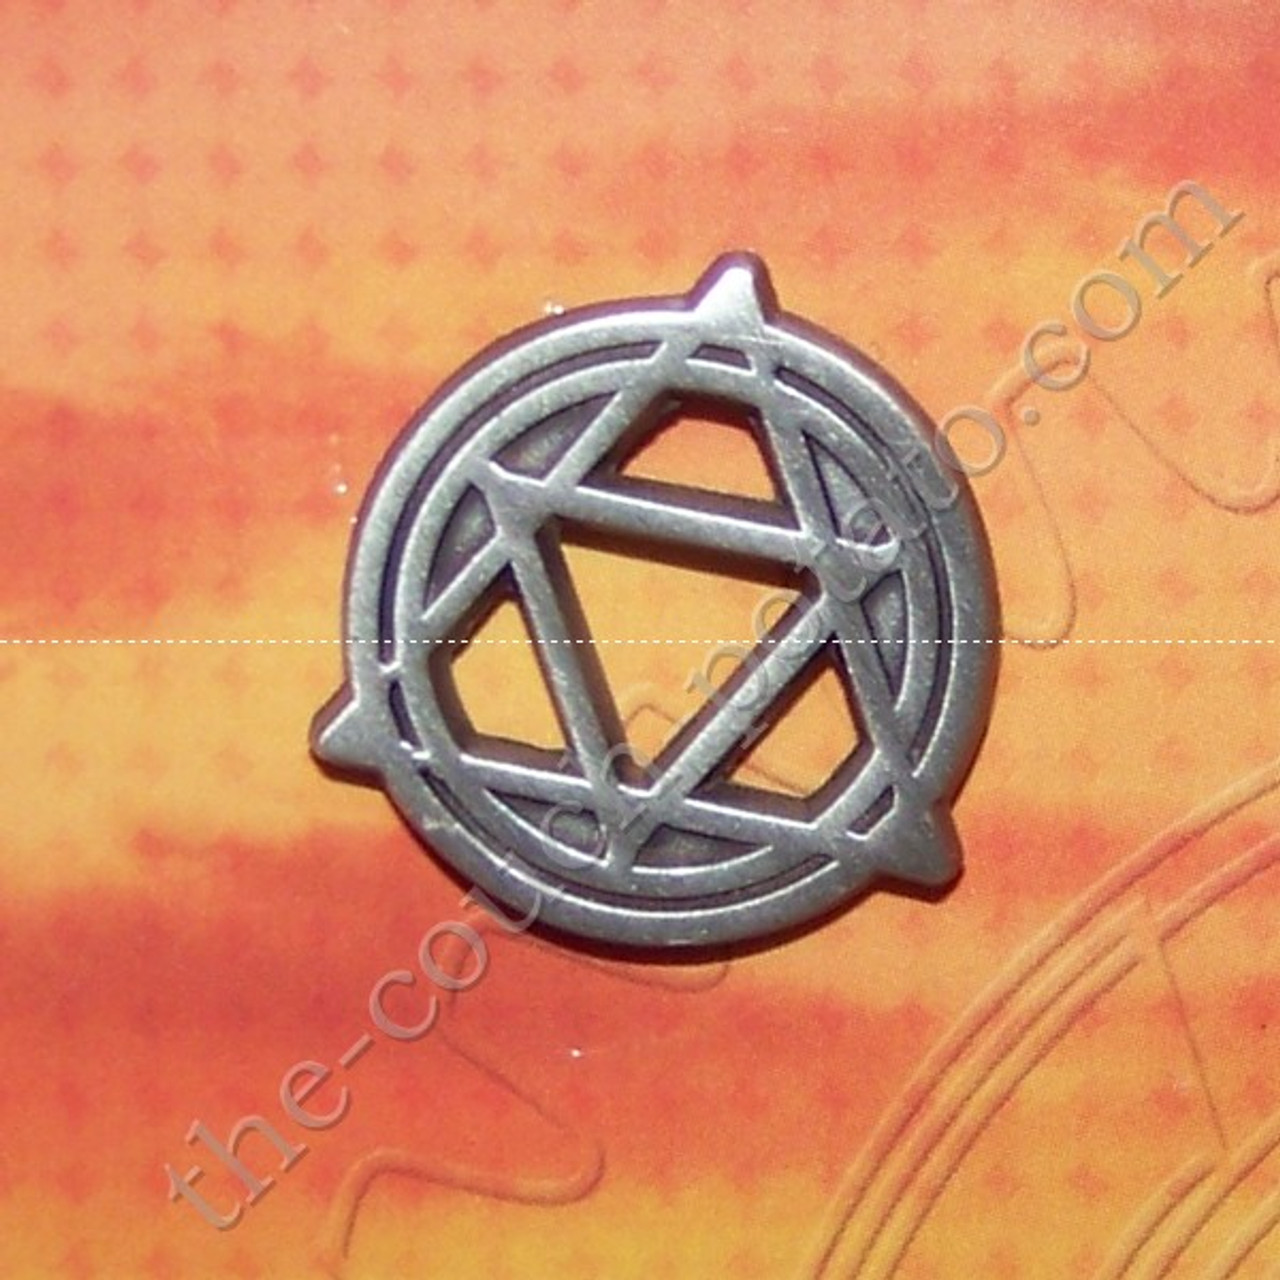 Pin on Fullmetal Alchemist